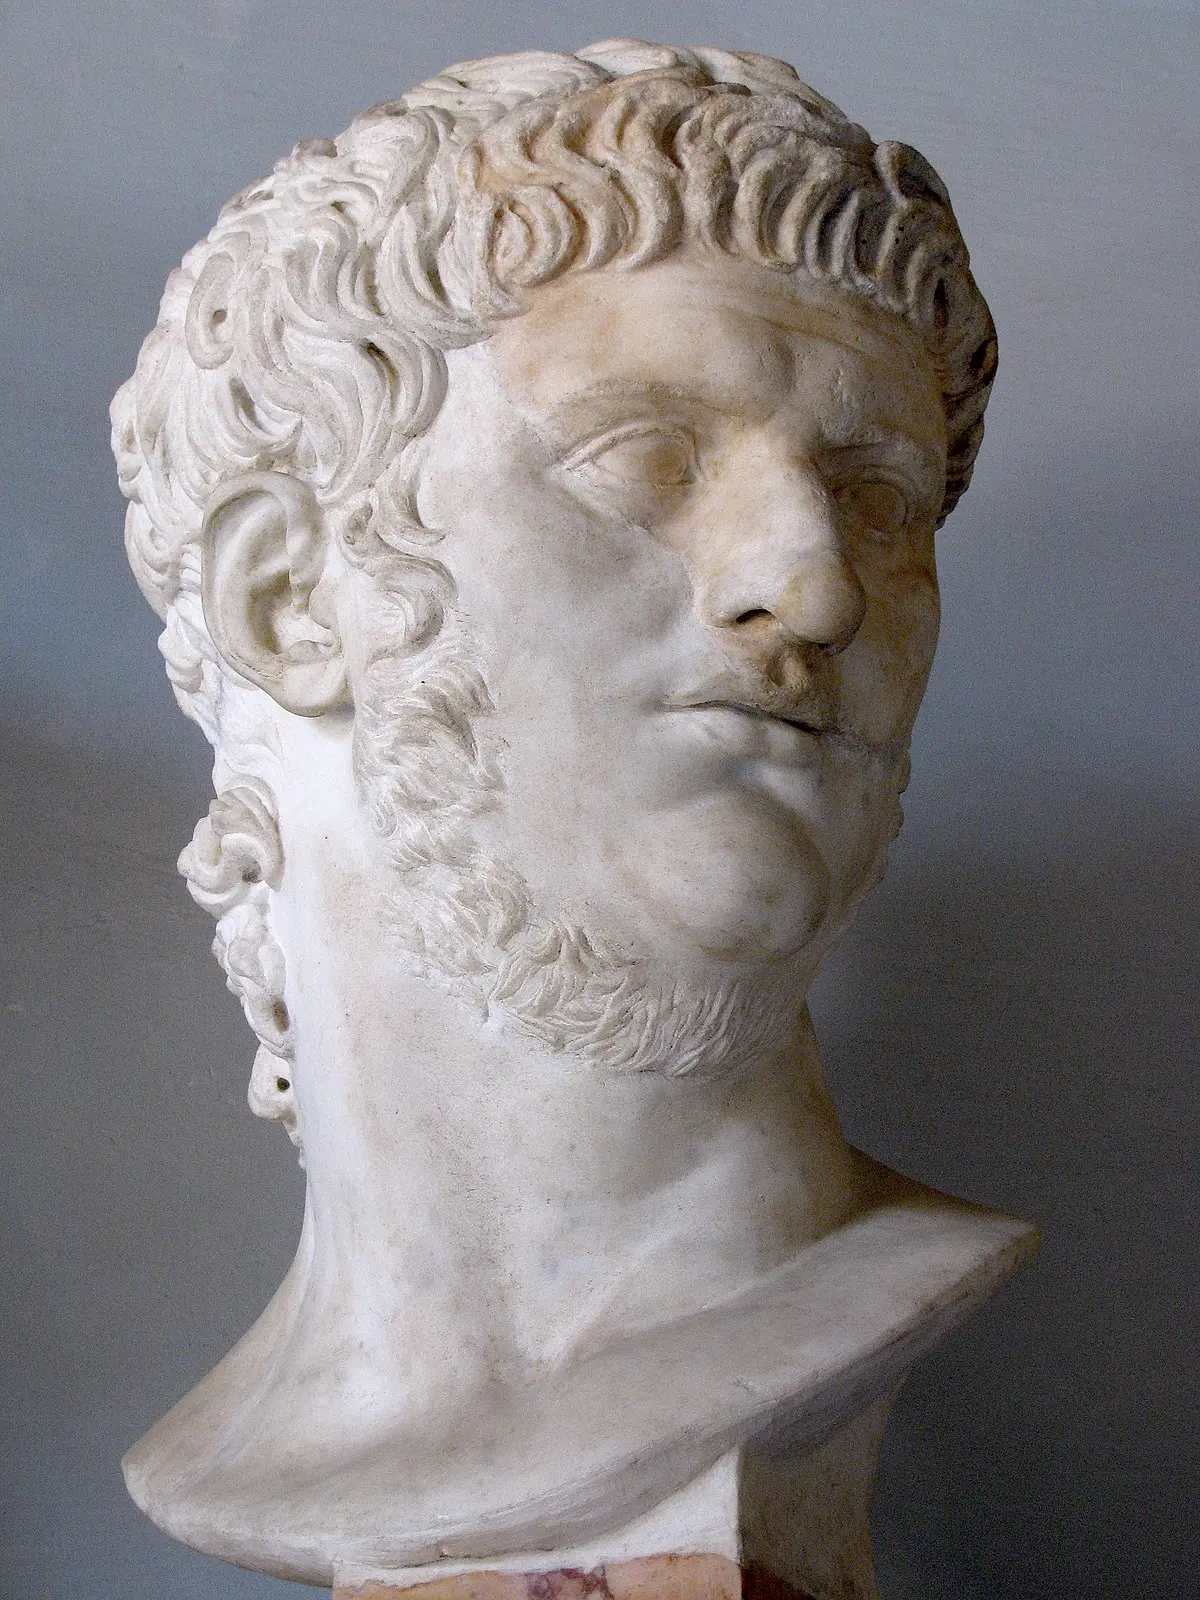 neron emperador romano biografia resumen - Quién fue Nerón que hizo y en qué epoca vivio